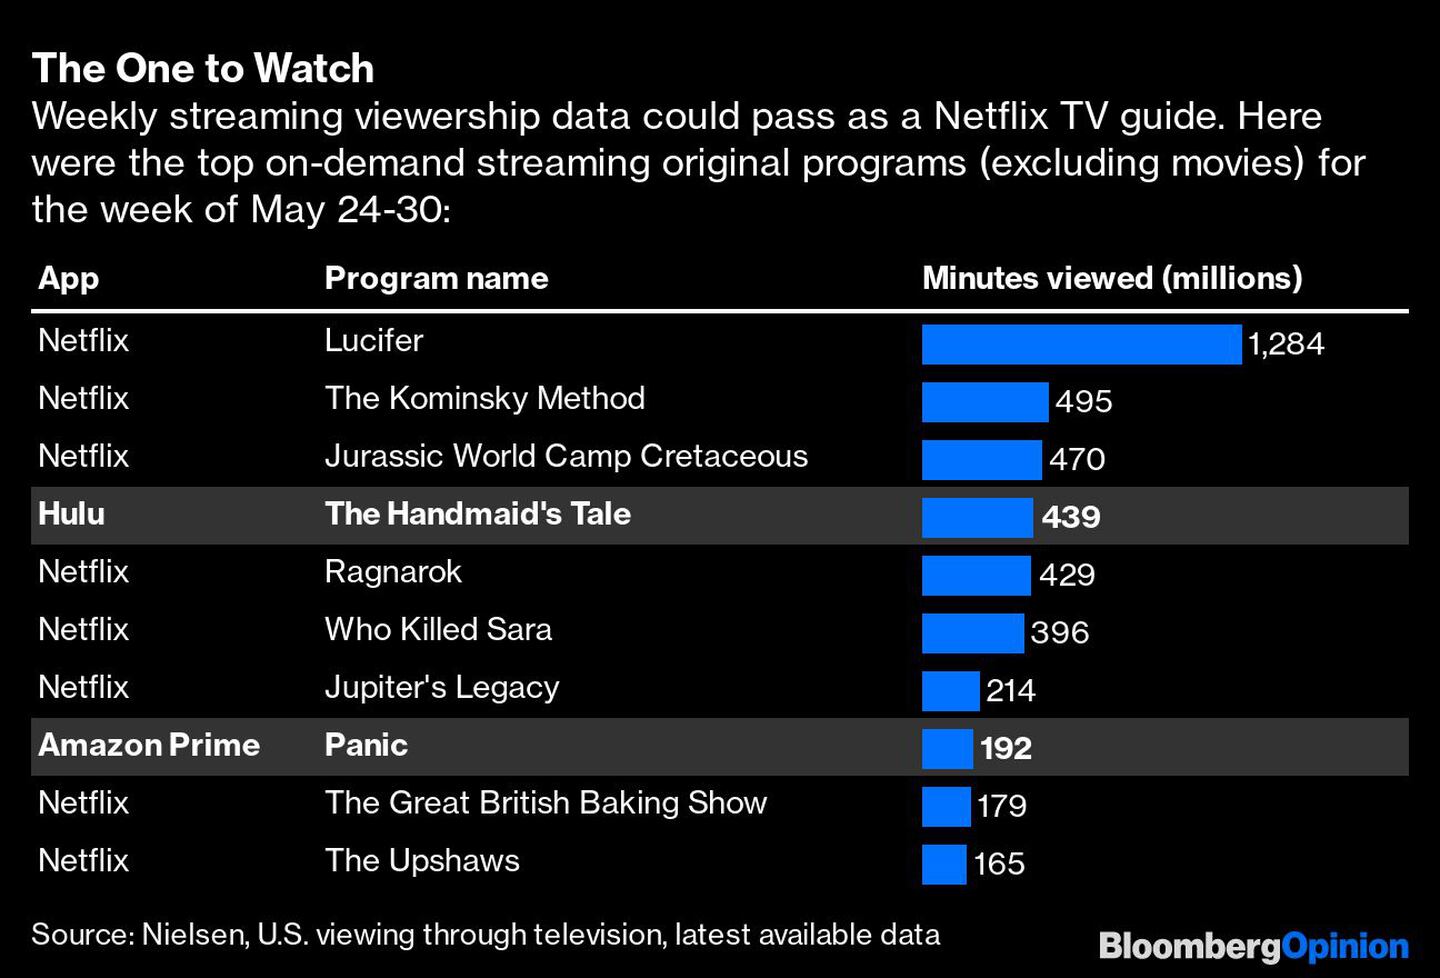 De los 10 contenidos por streaming más mirados en la semana entre el 24 al 30 de mayo, 8 de ellos son de Netflix.dfd